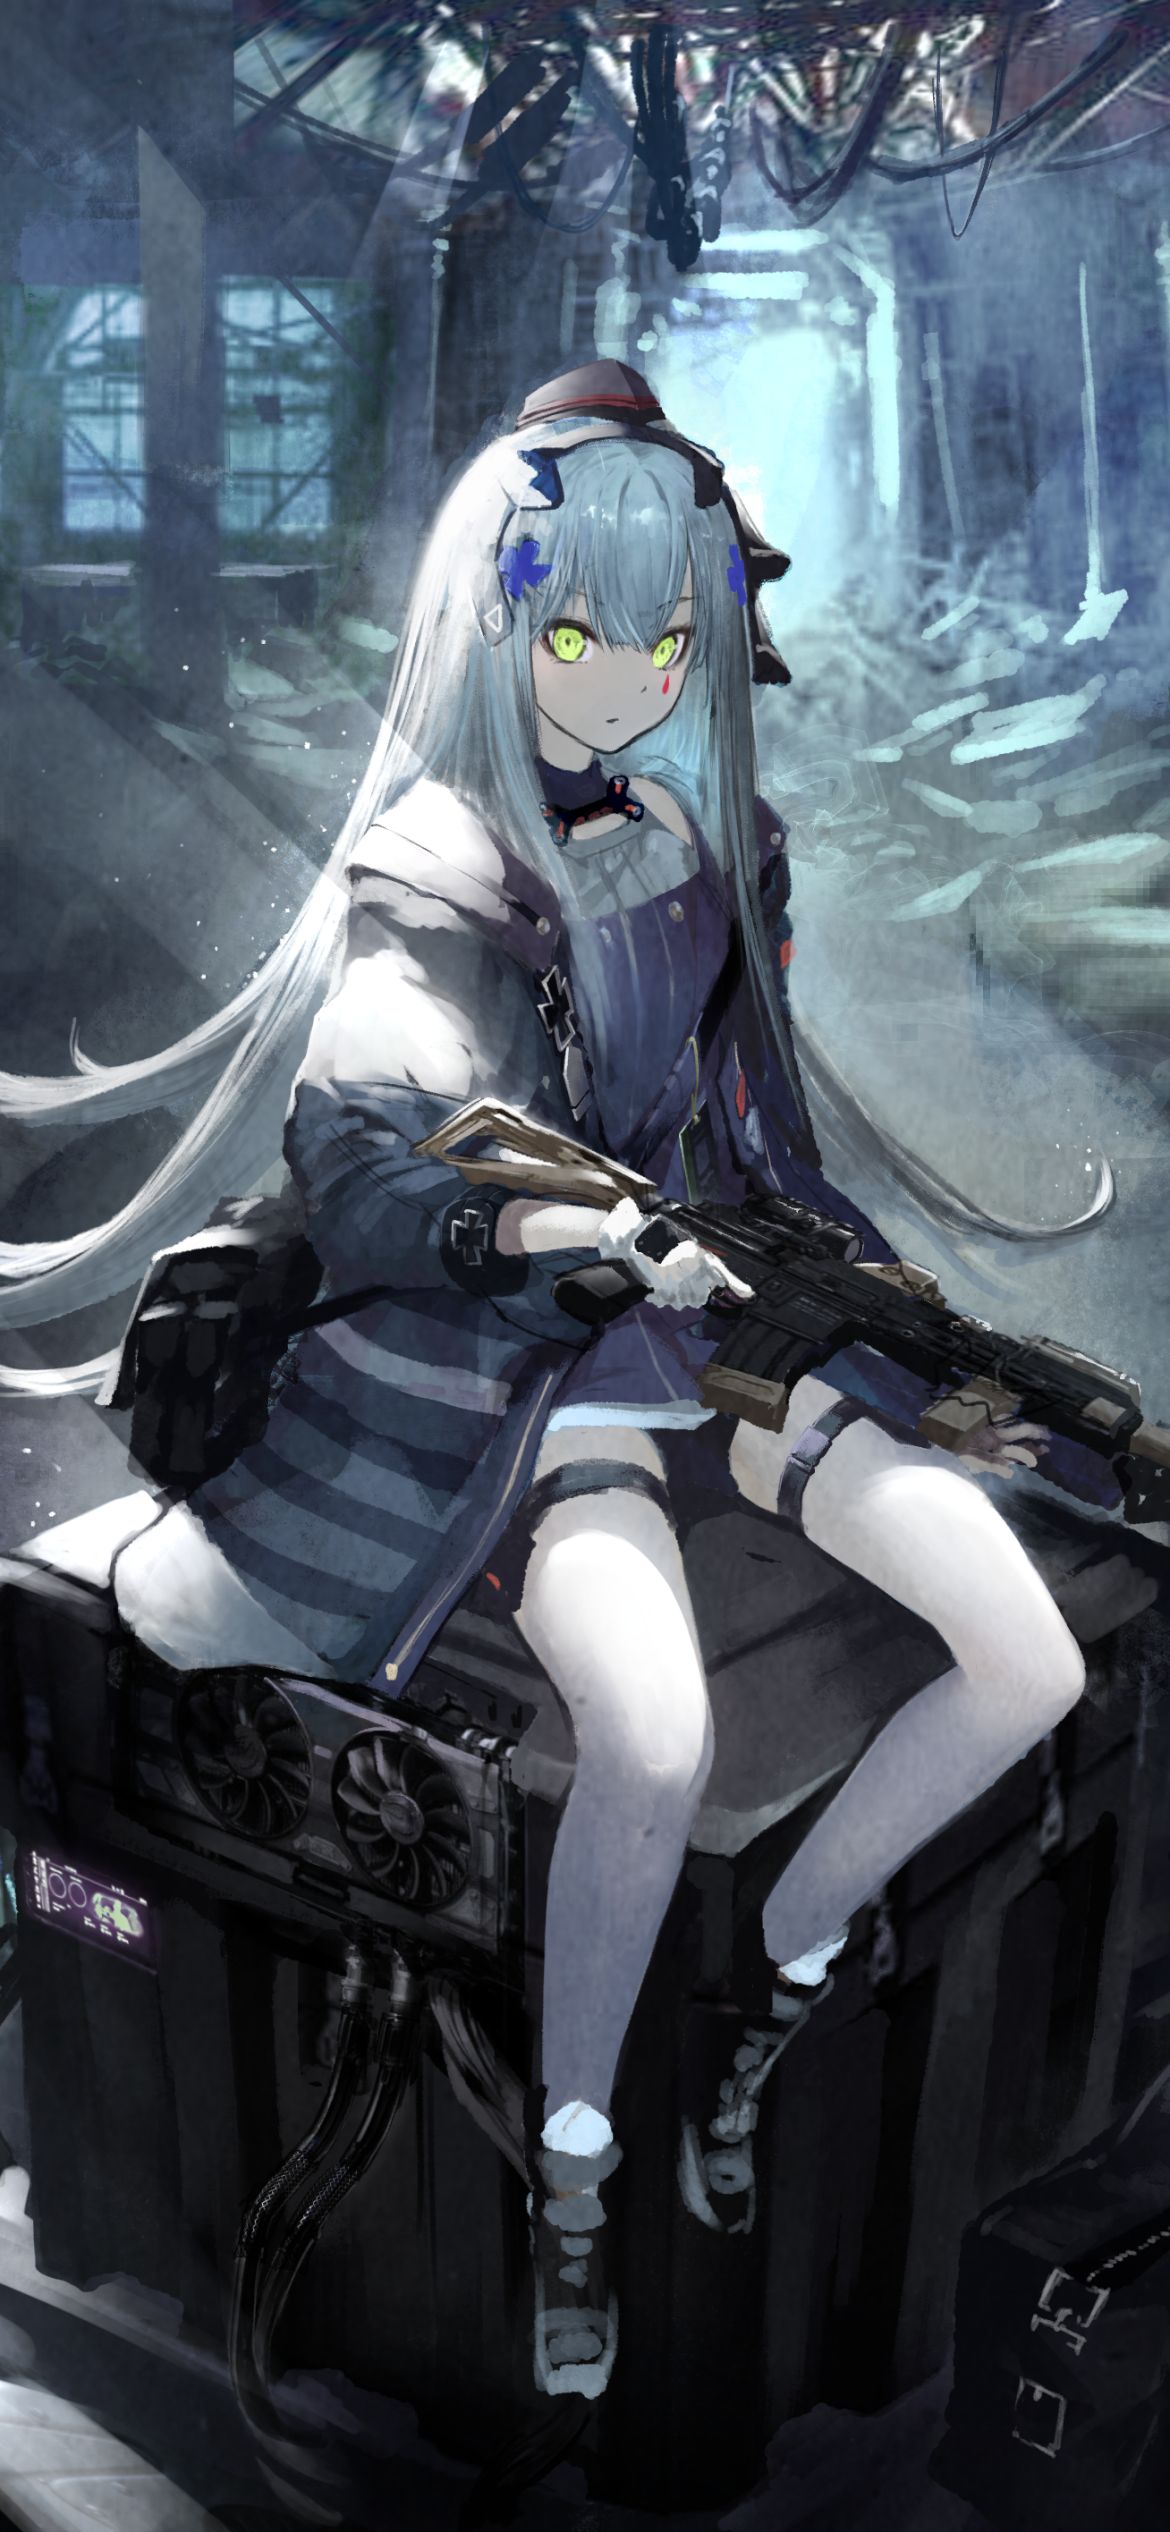 Anime Girls Frontline HK416 Rifle Gun 4K Wallpaper #6.1084